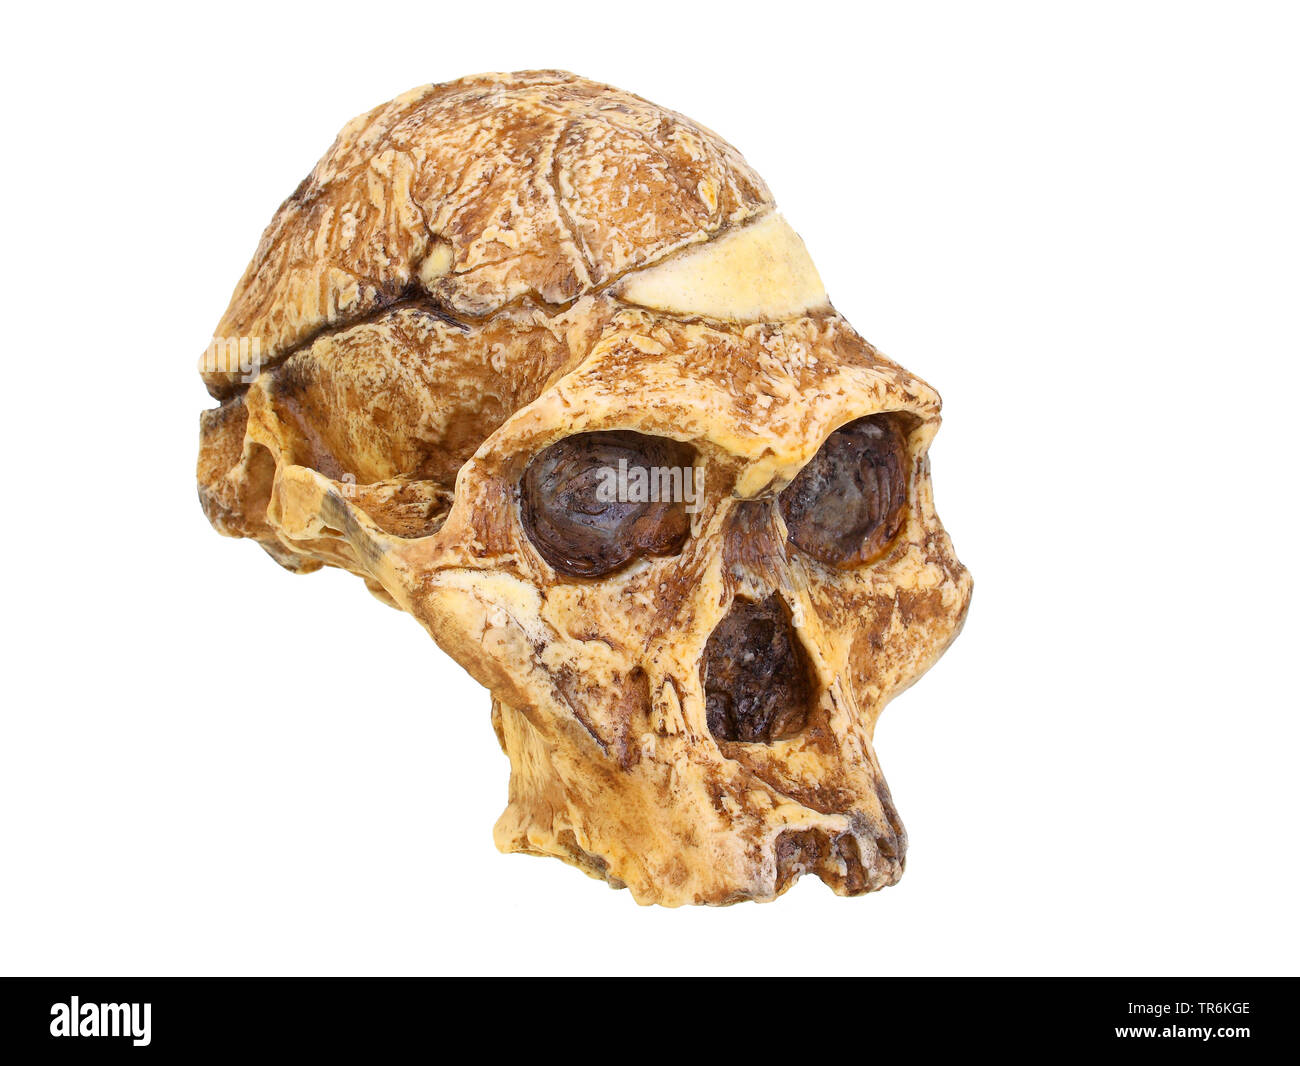 Frau Ples (Australopithecus africanus), Nachbildung der Schädel von Australopithecus africanus (Frau Ples) Stockfoto